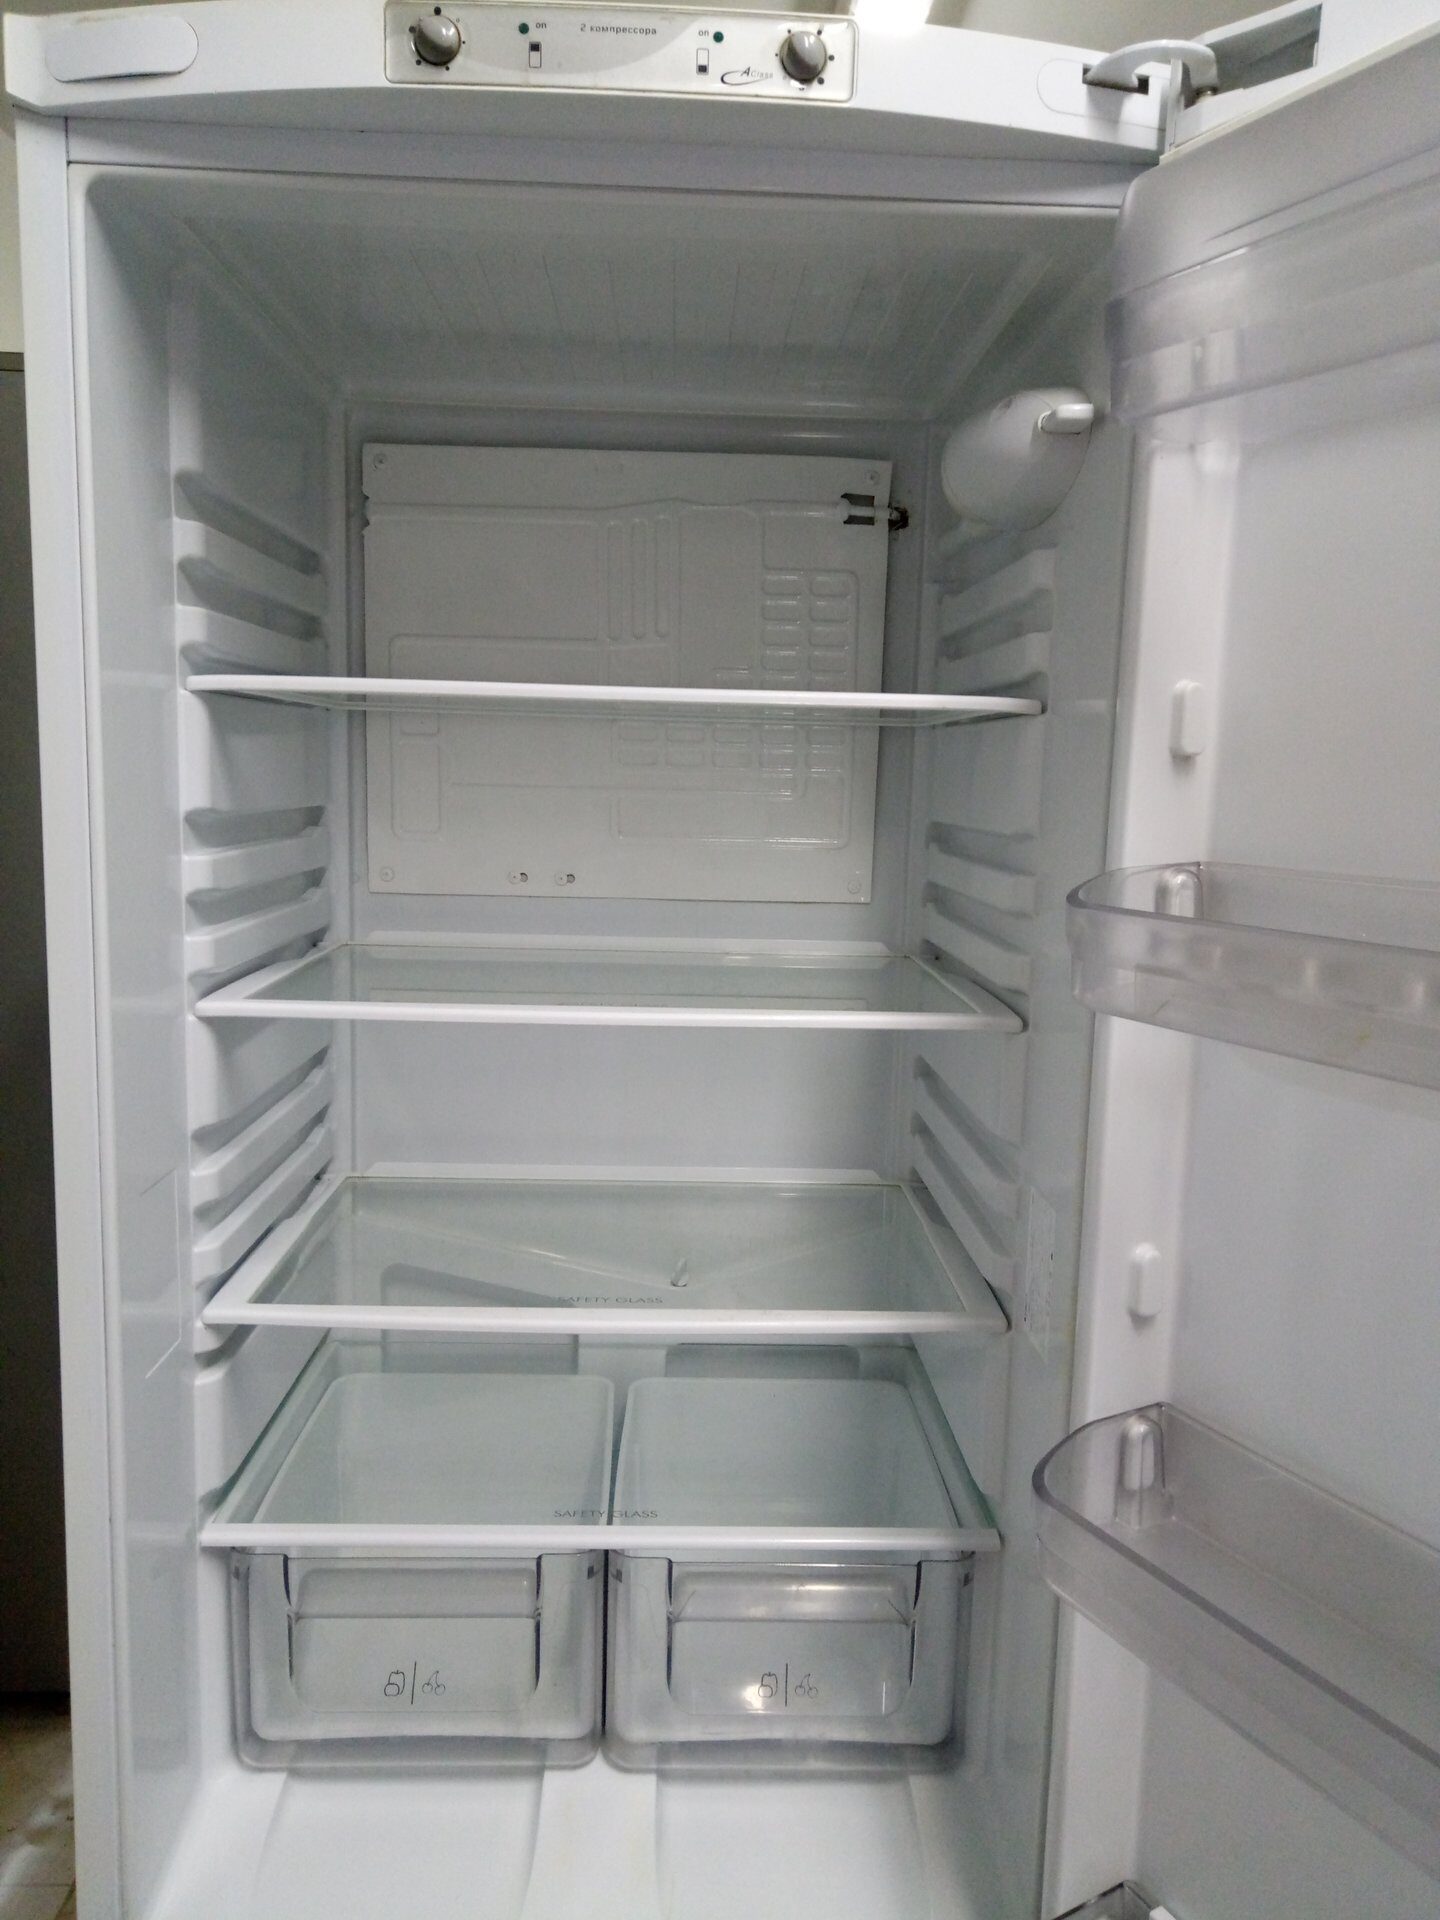 Аристон RMBA 2185 L холодильник